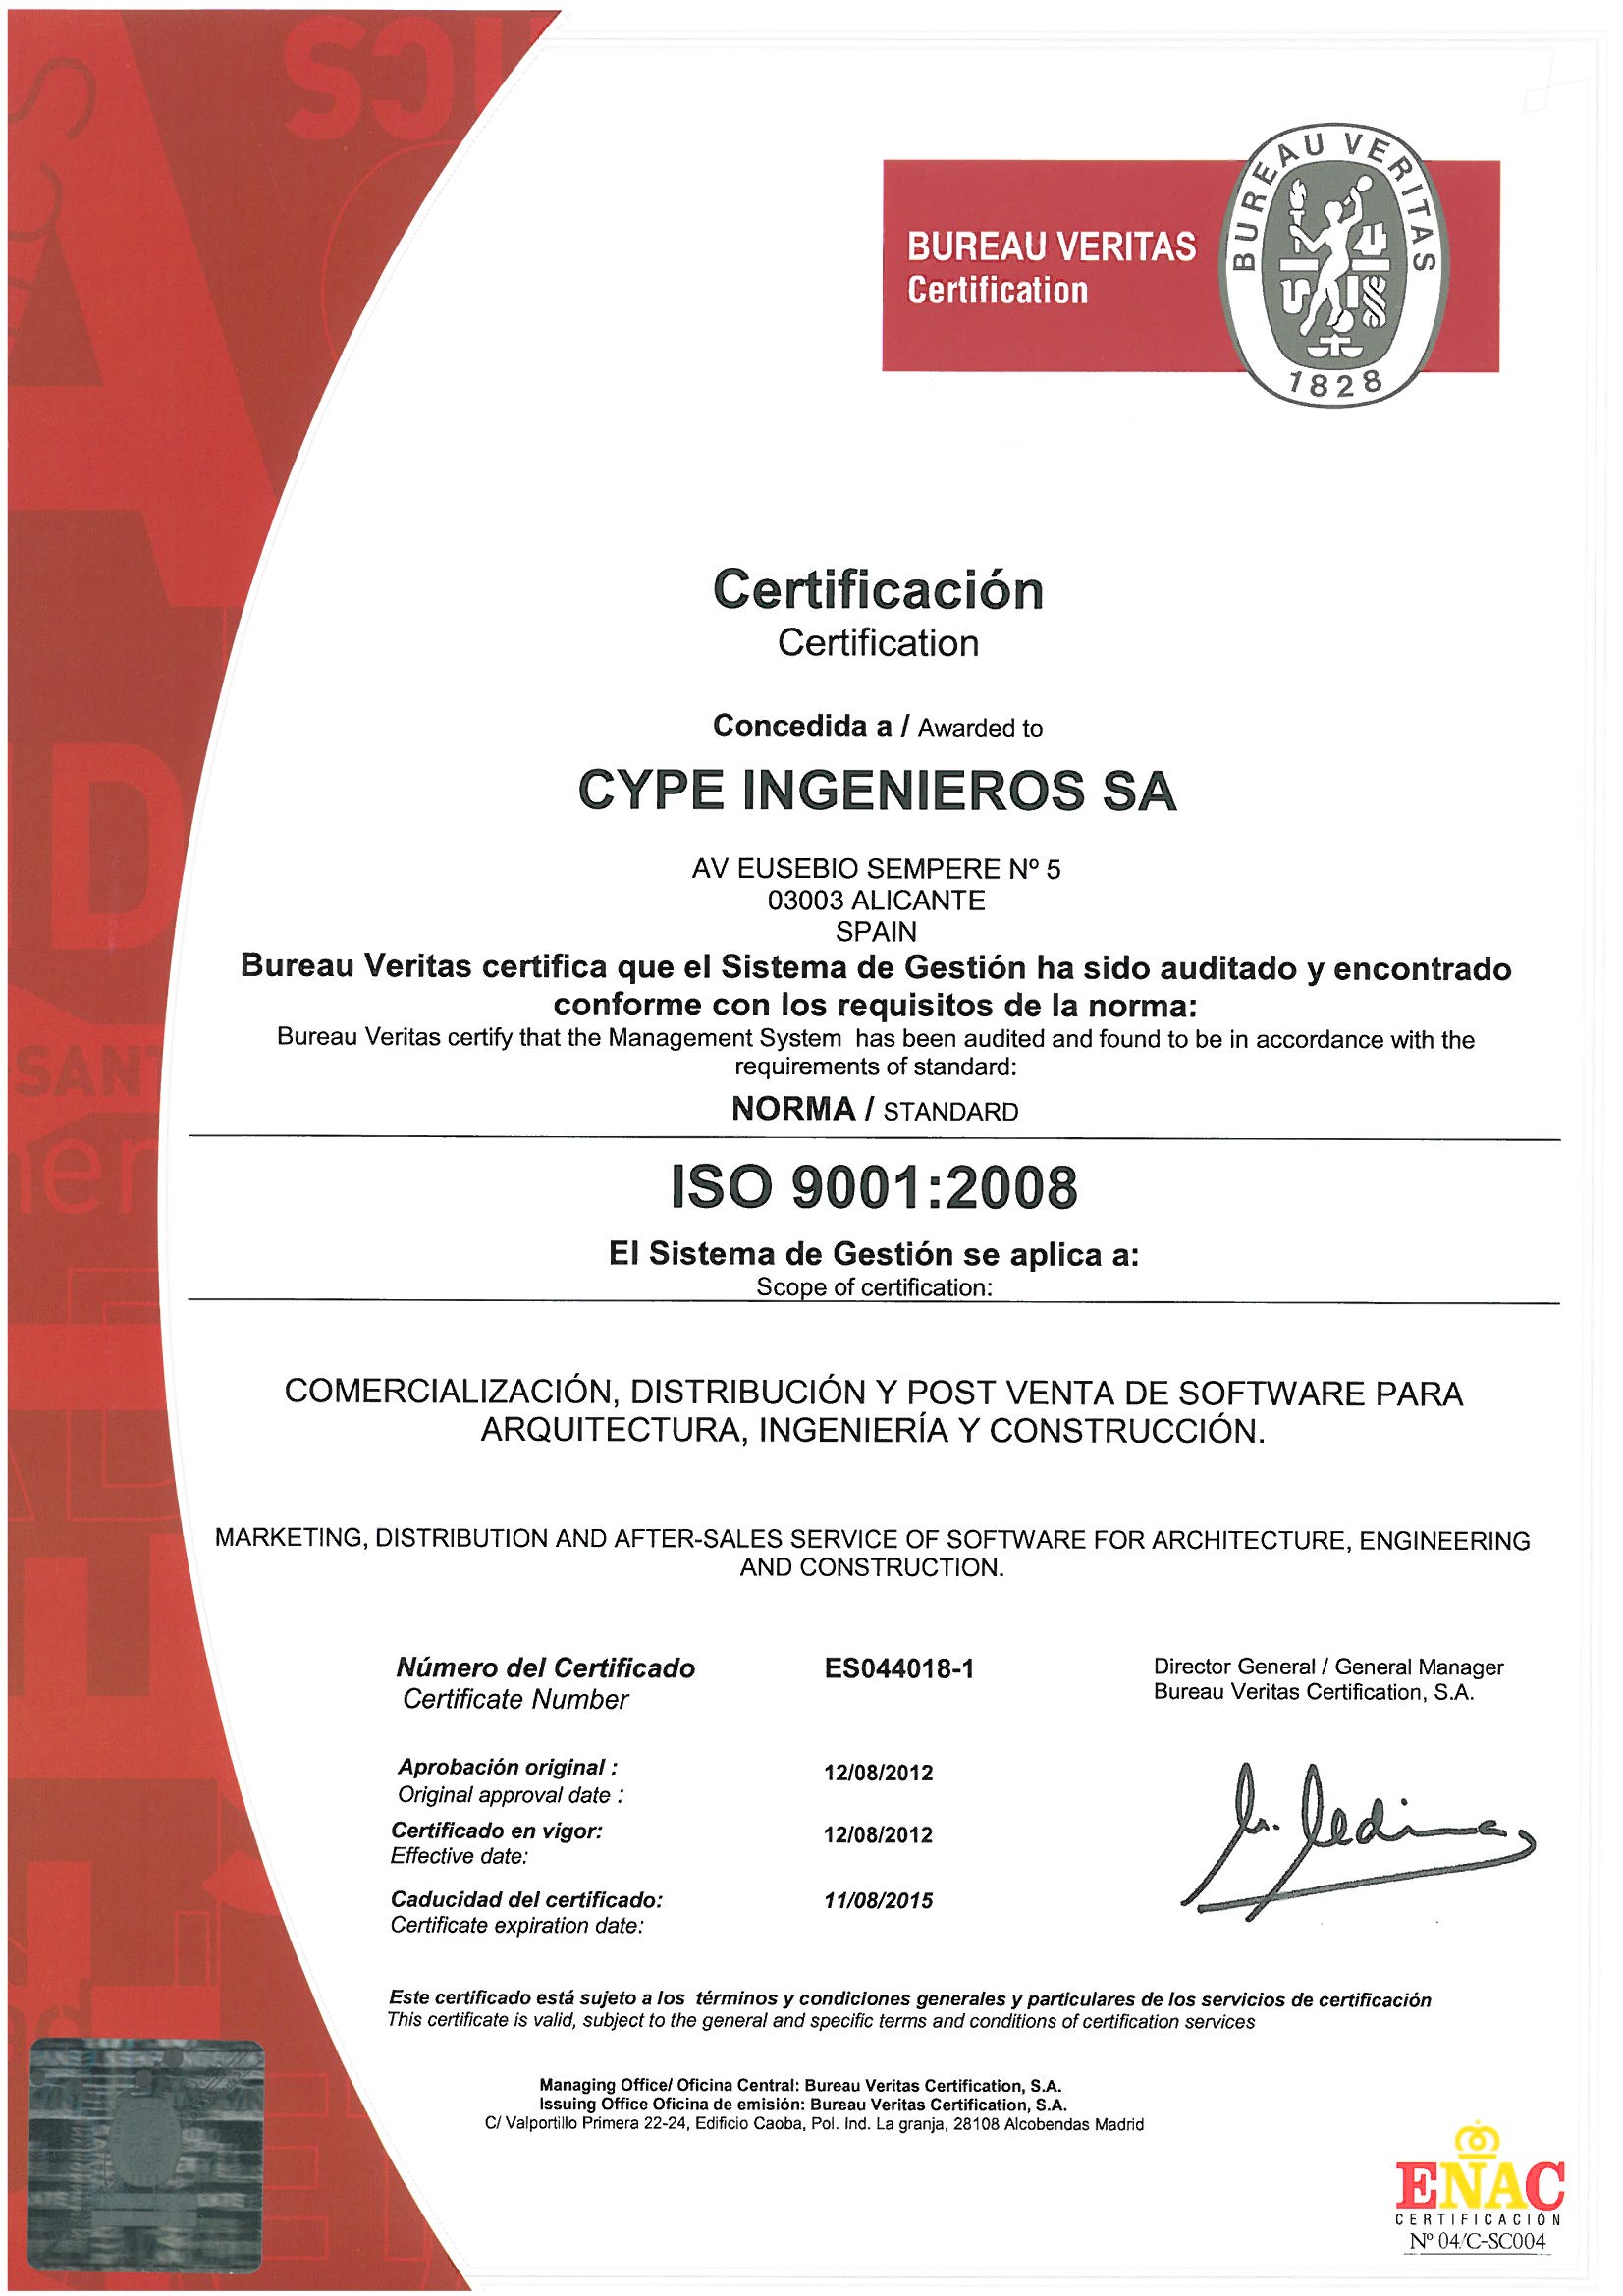 Cype Logra El Certificado Iso 9001 2008 Que Avala Su Sistema De Gestión